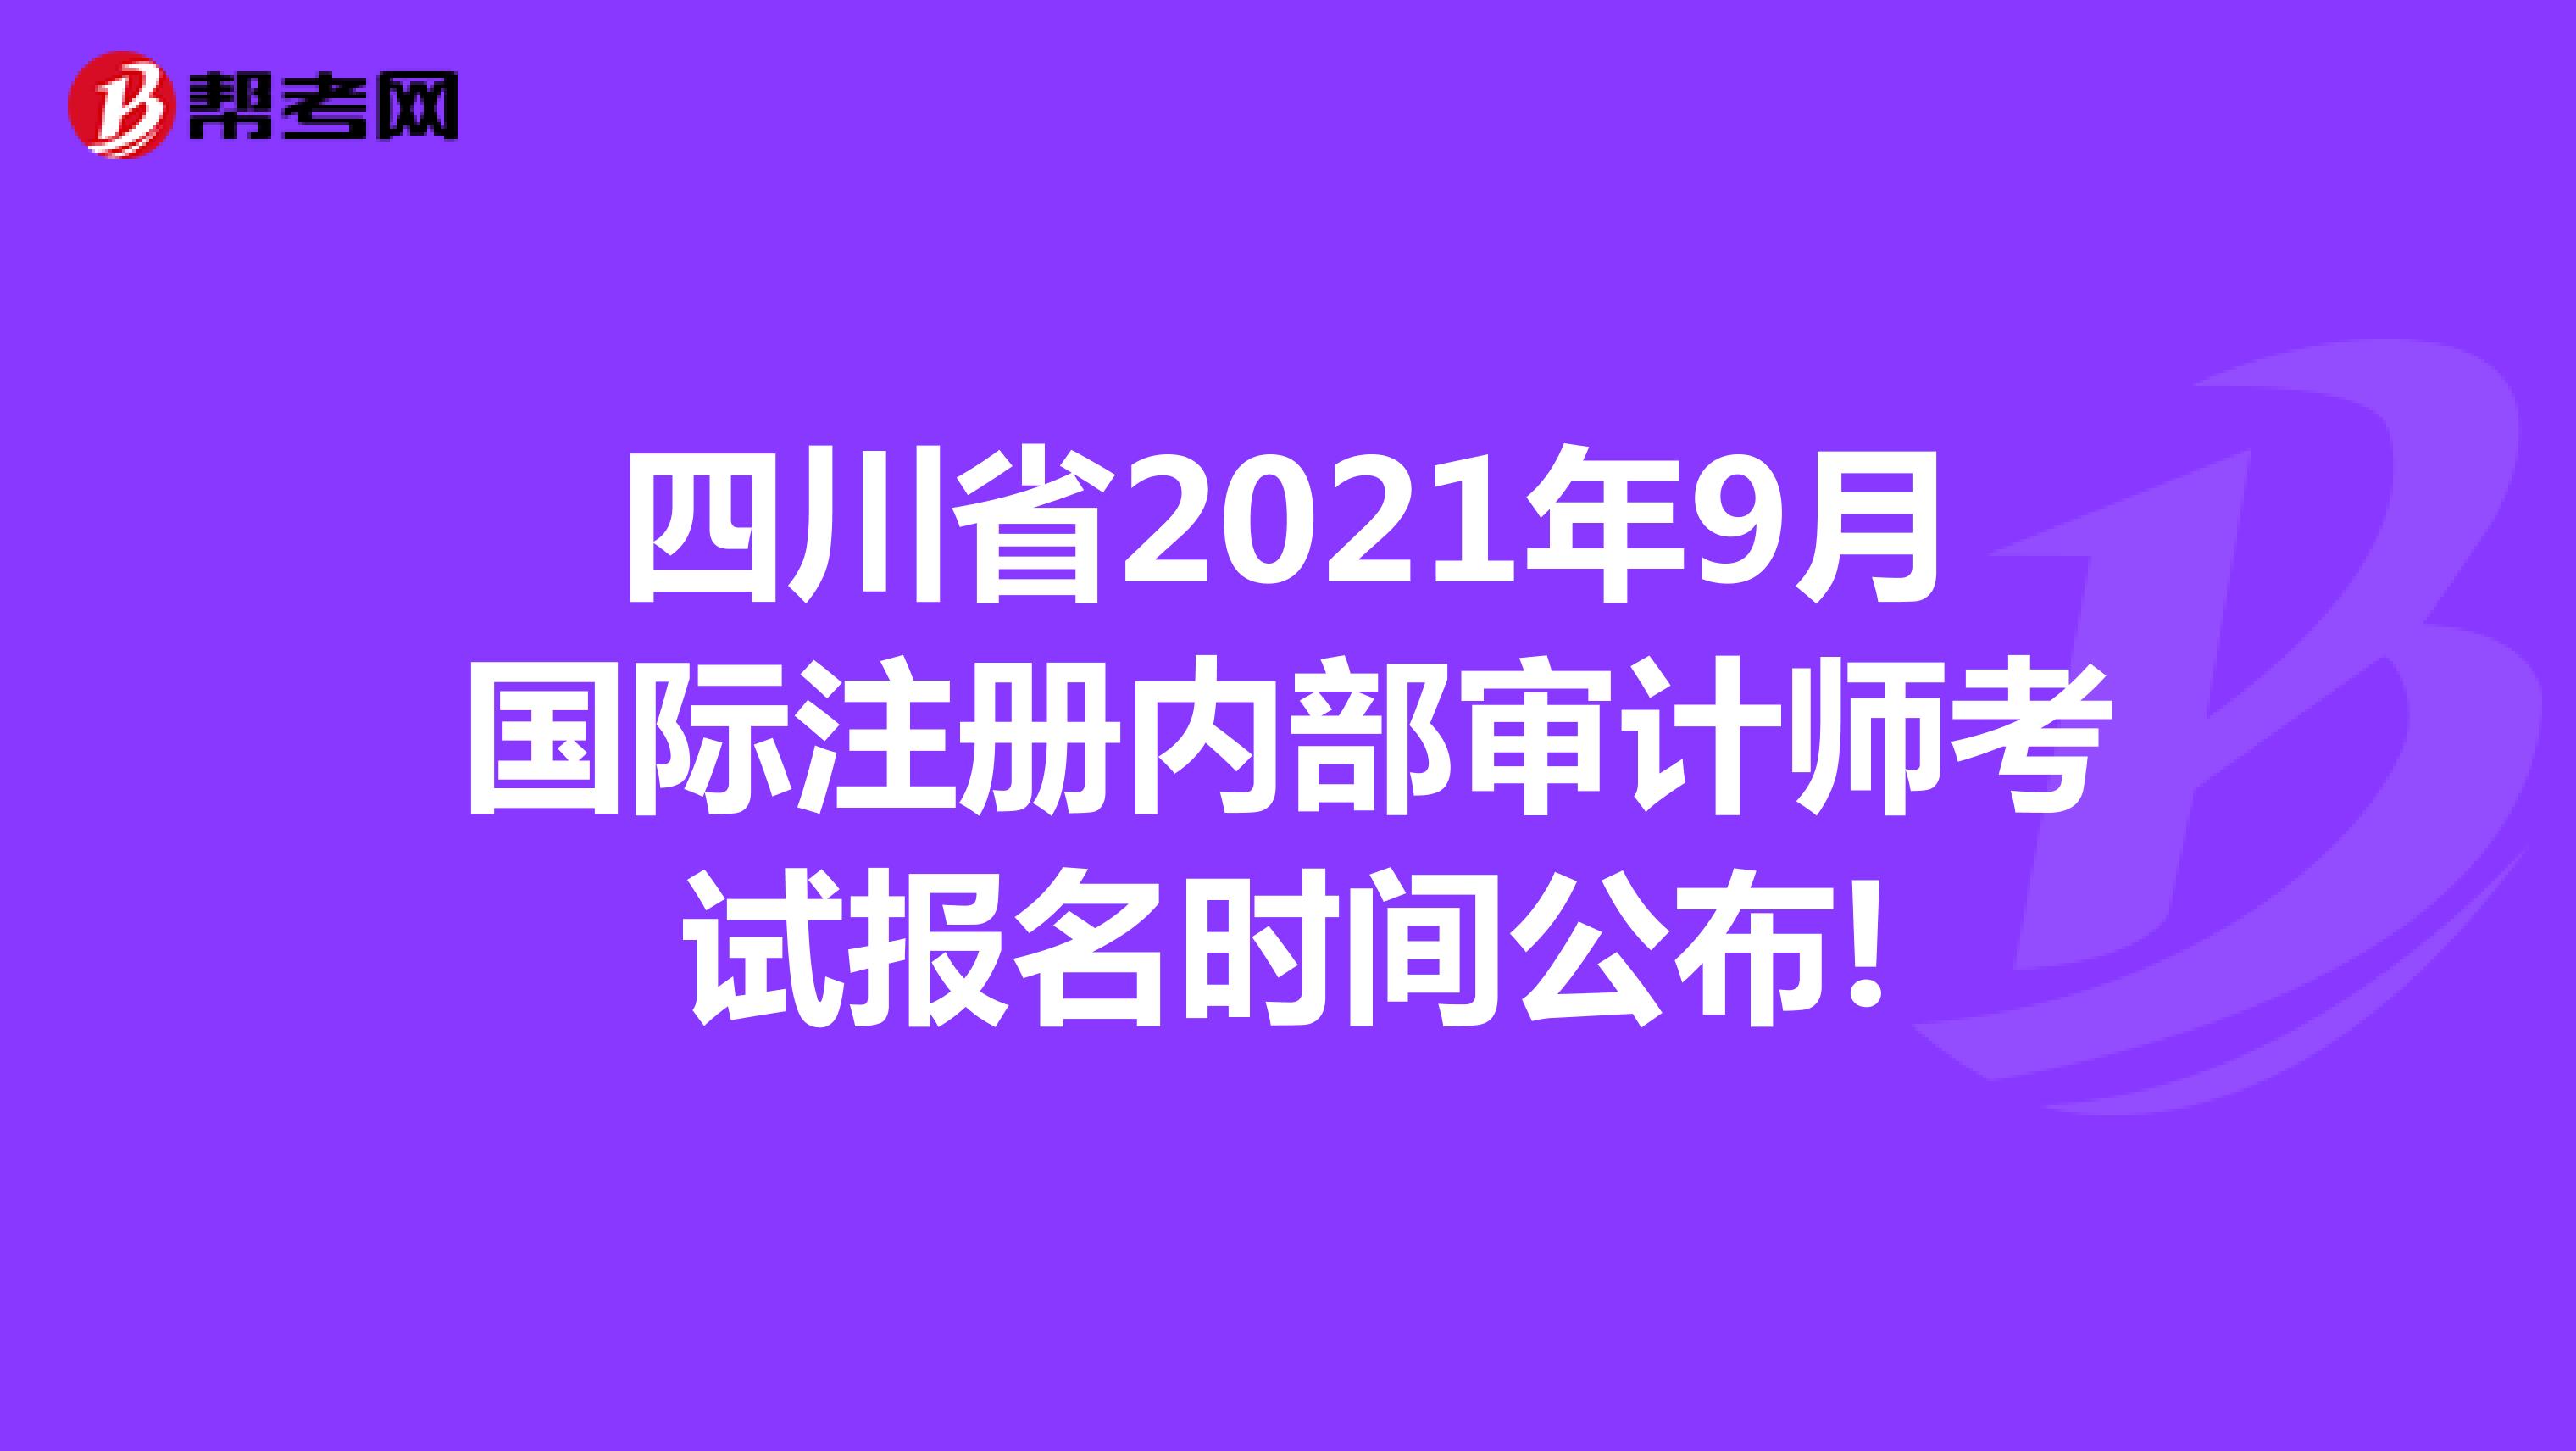 四川省2021年9月国际注册内部审计师考试报名时间公布!